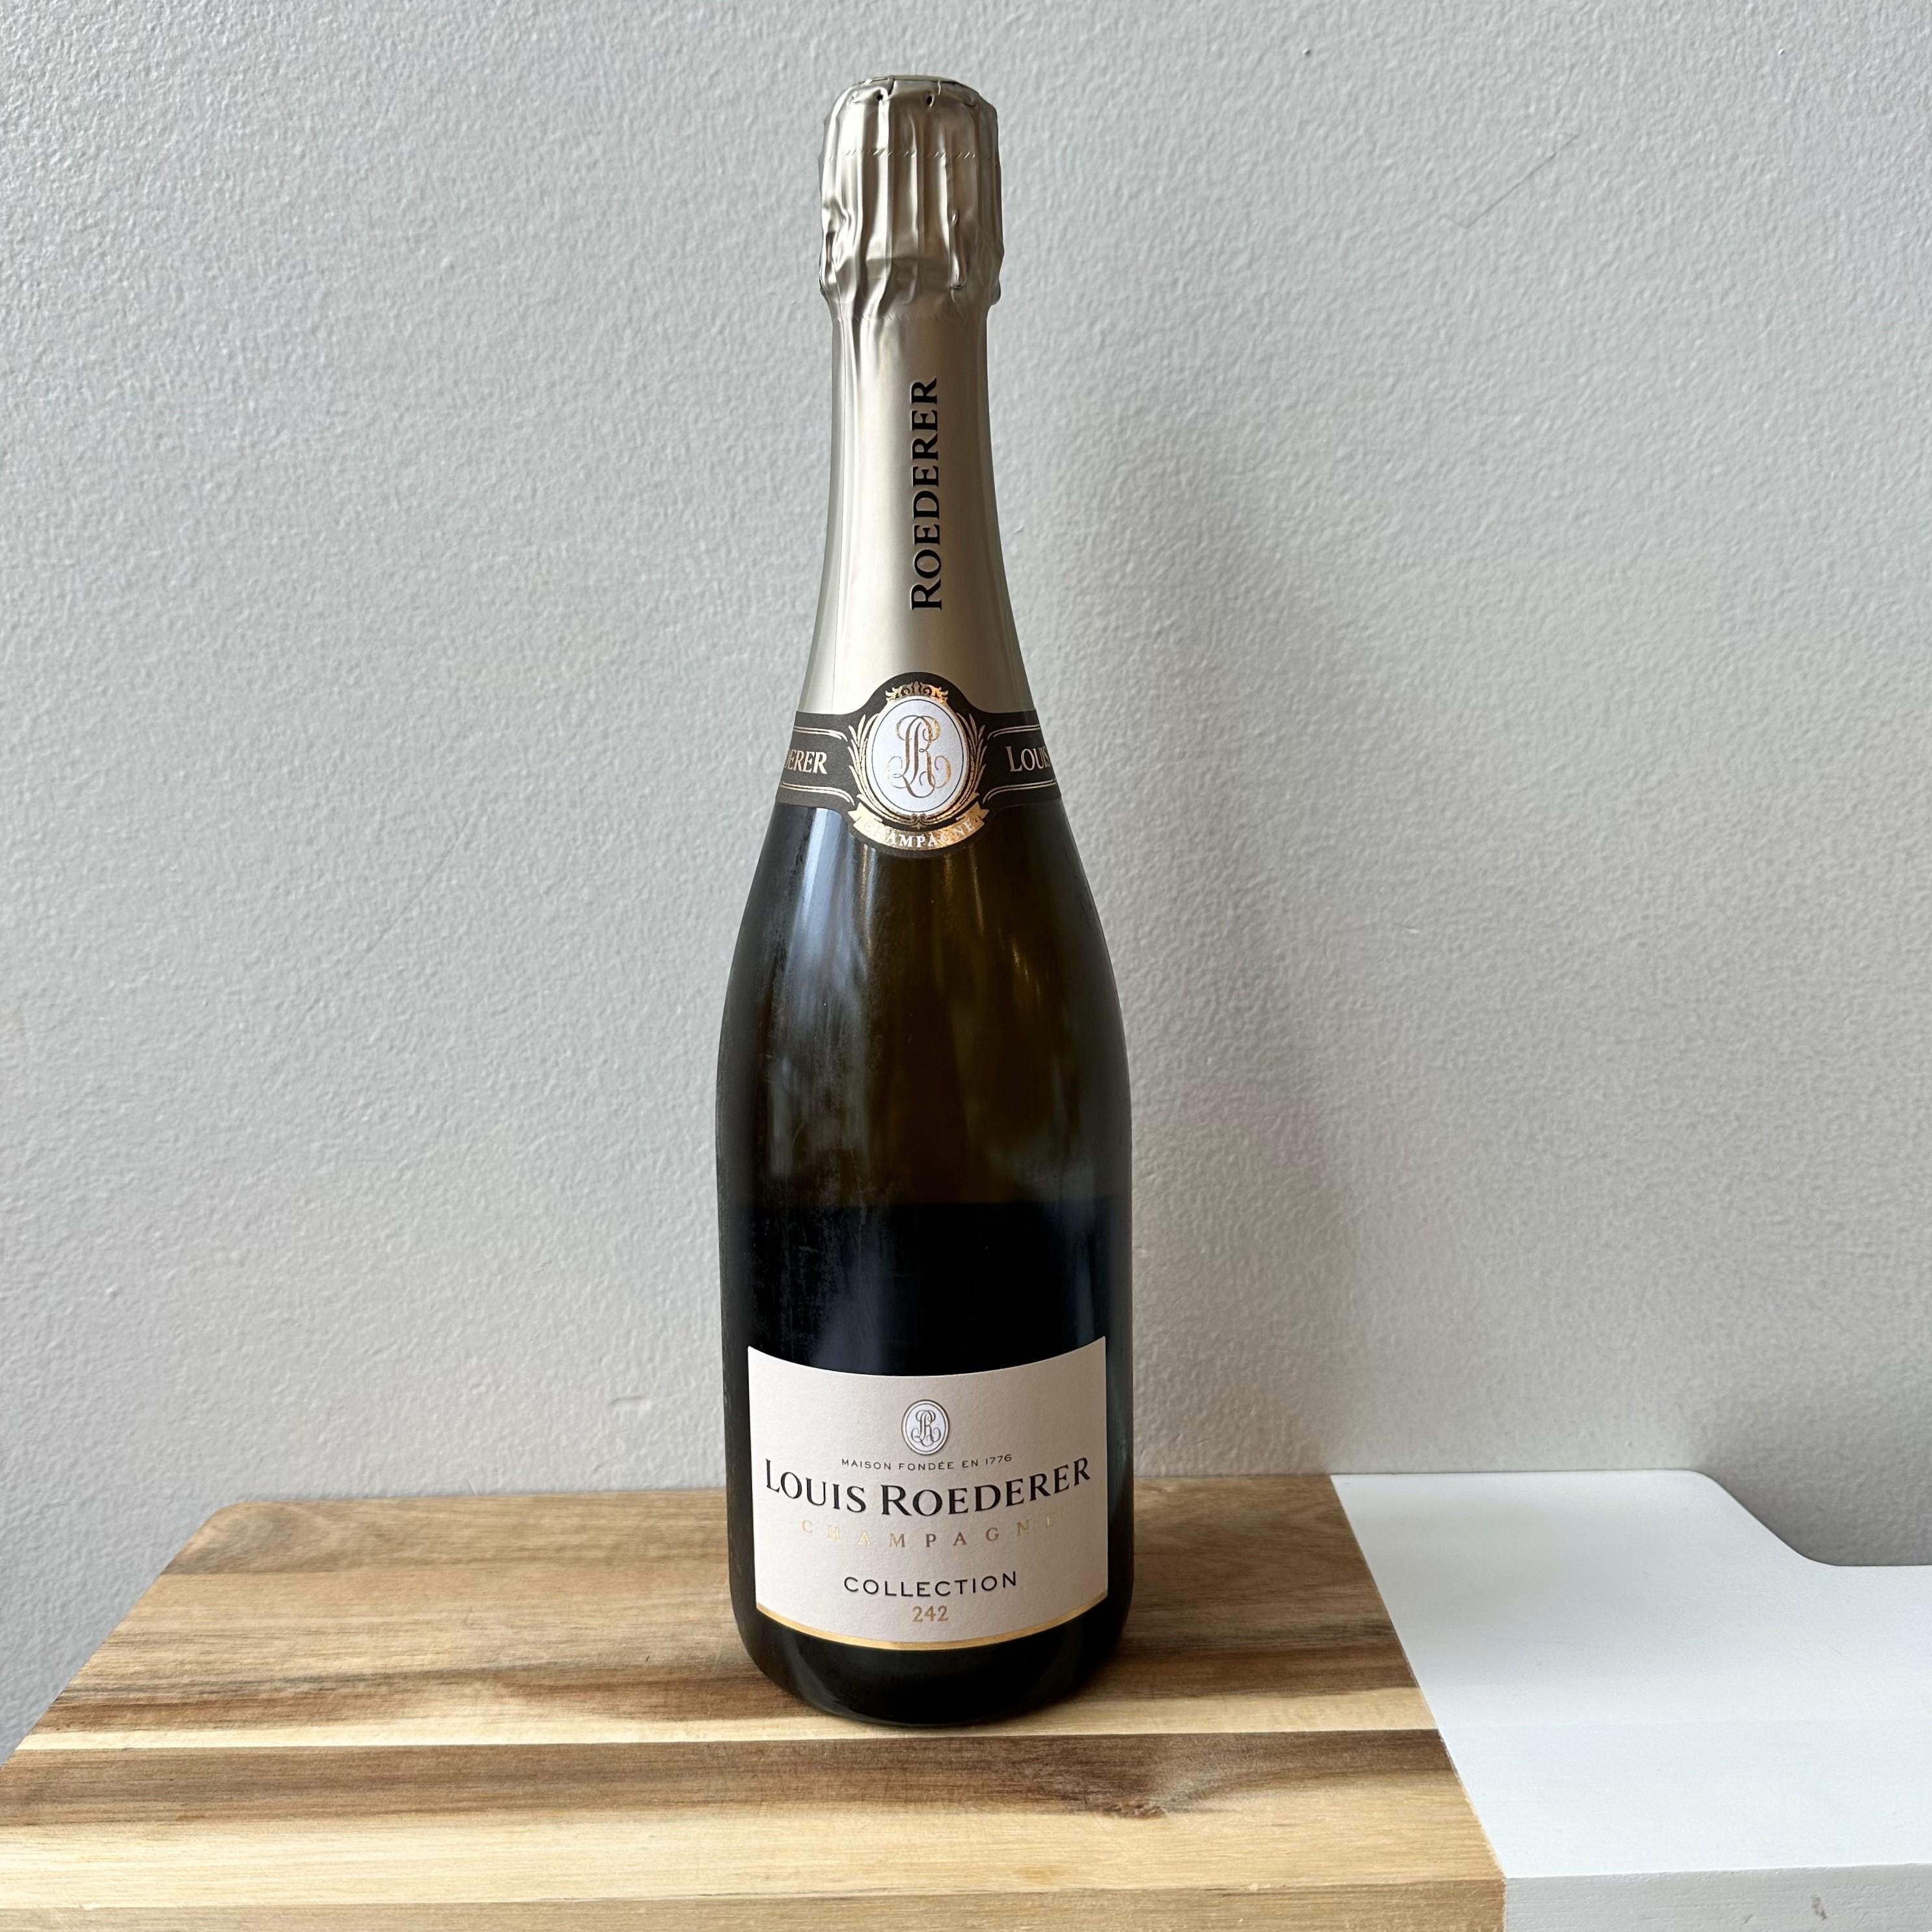 Louis Roederer "Collection 242" Champagne N/V France